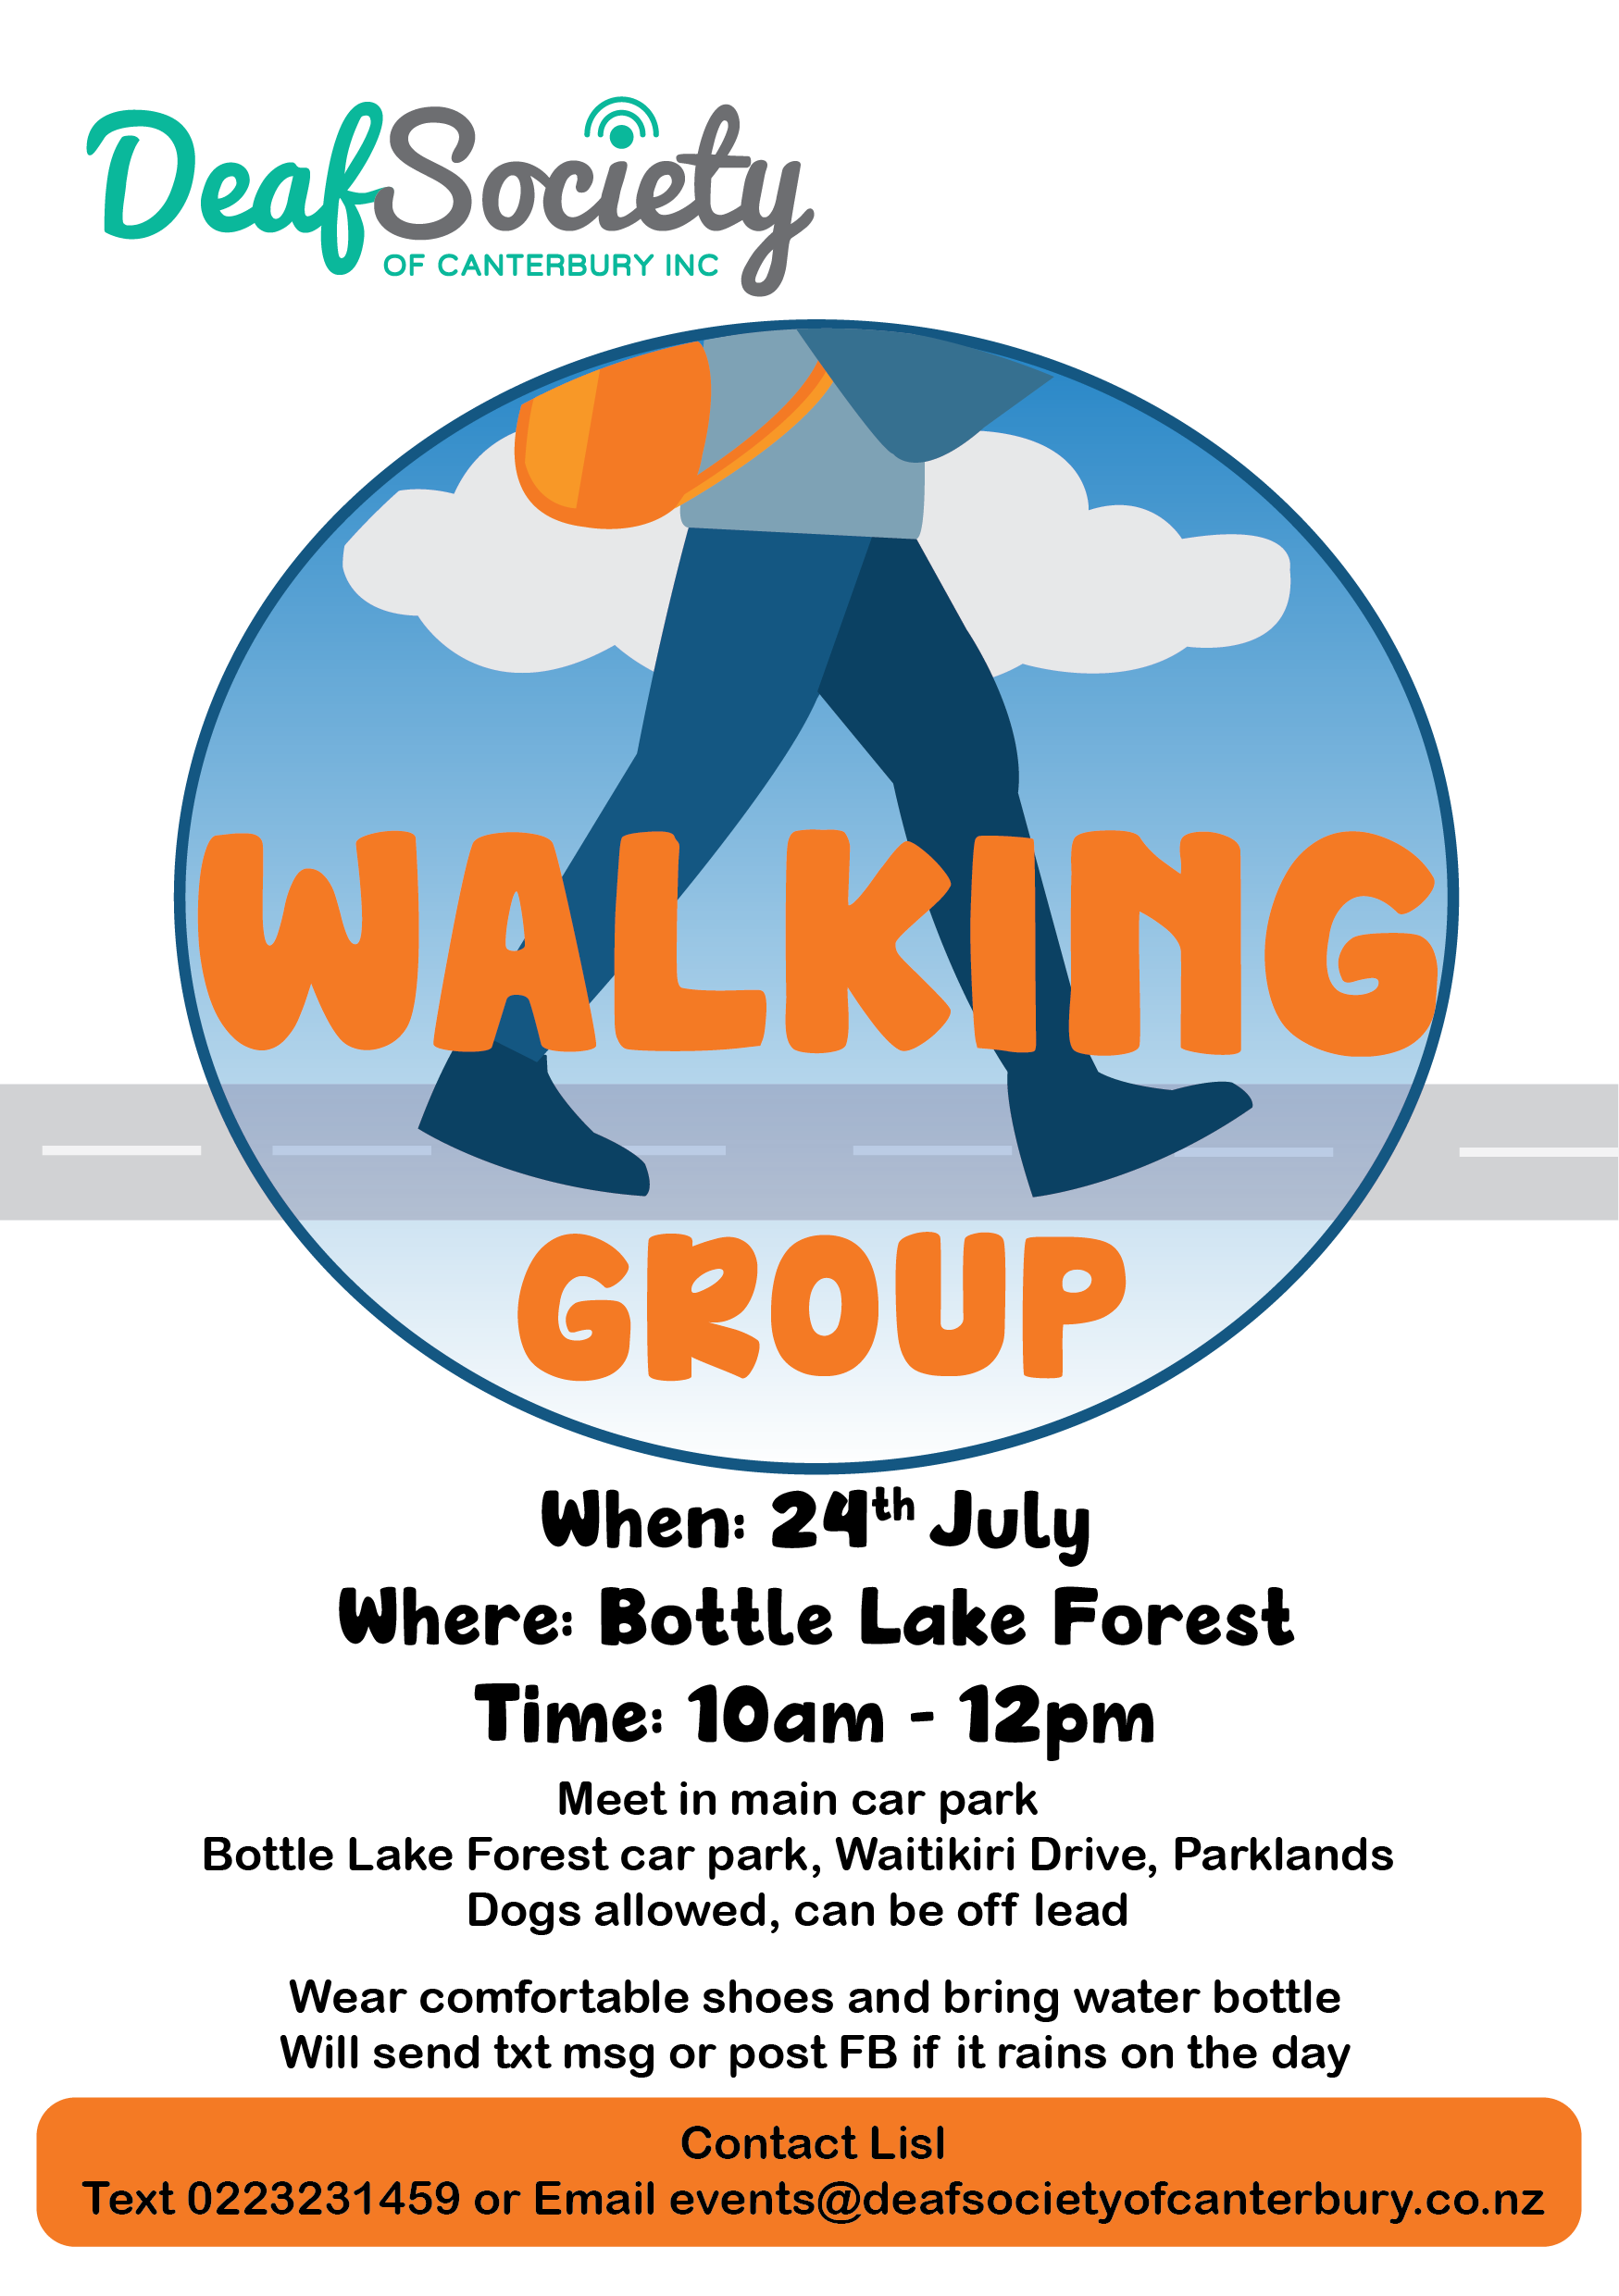 Walking group 01